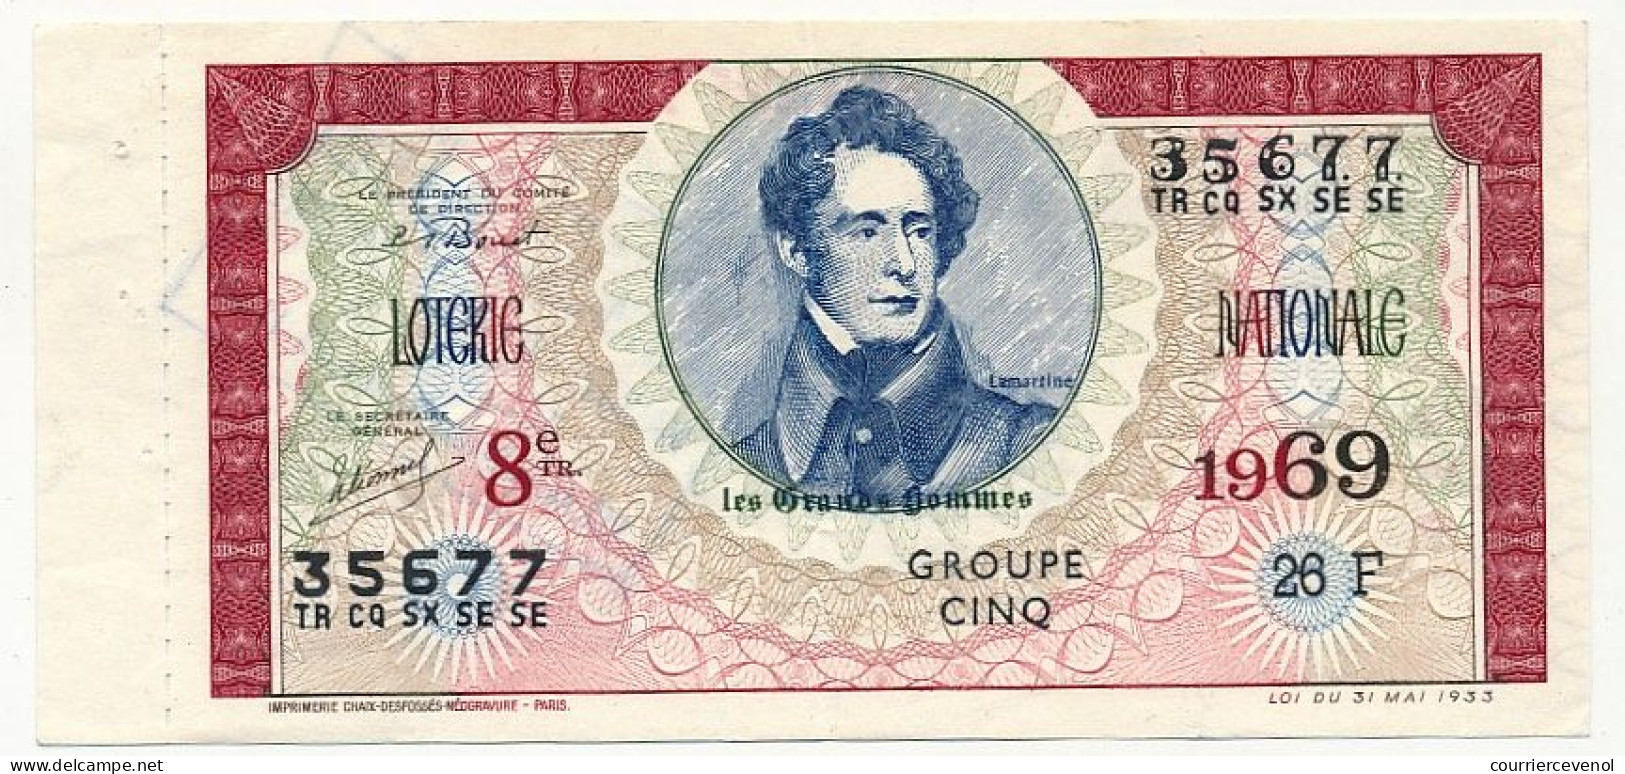 FRANCE - Loterie Nationale - Les Grands Hommes - Lamartine - 8ème Tranche - 1969 - Billets De Loterie